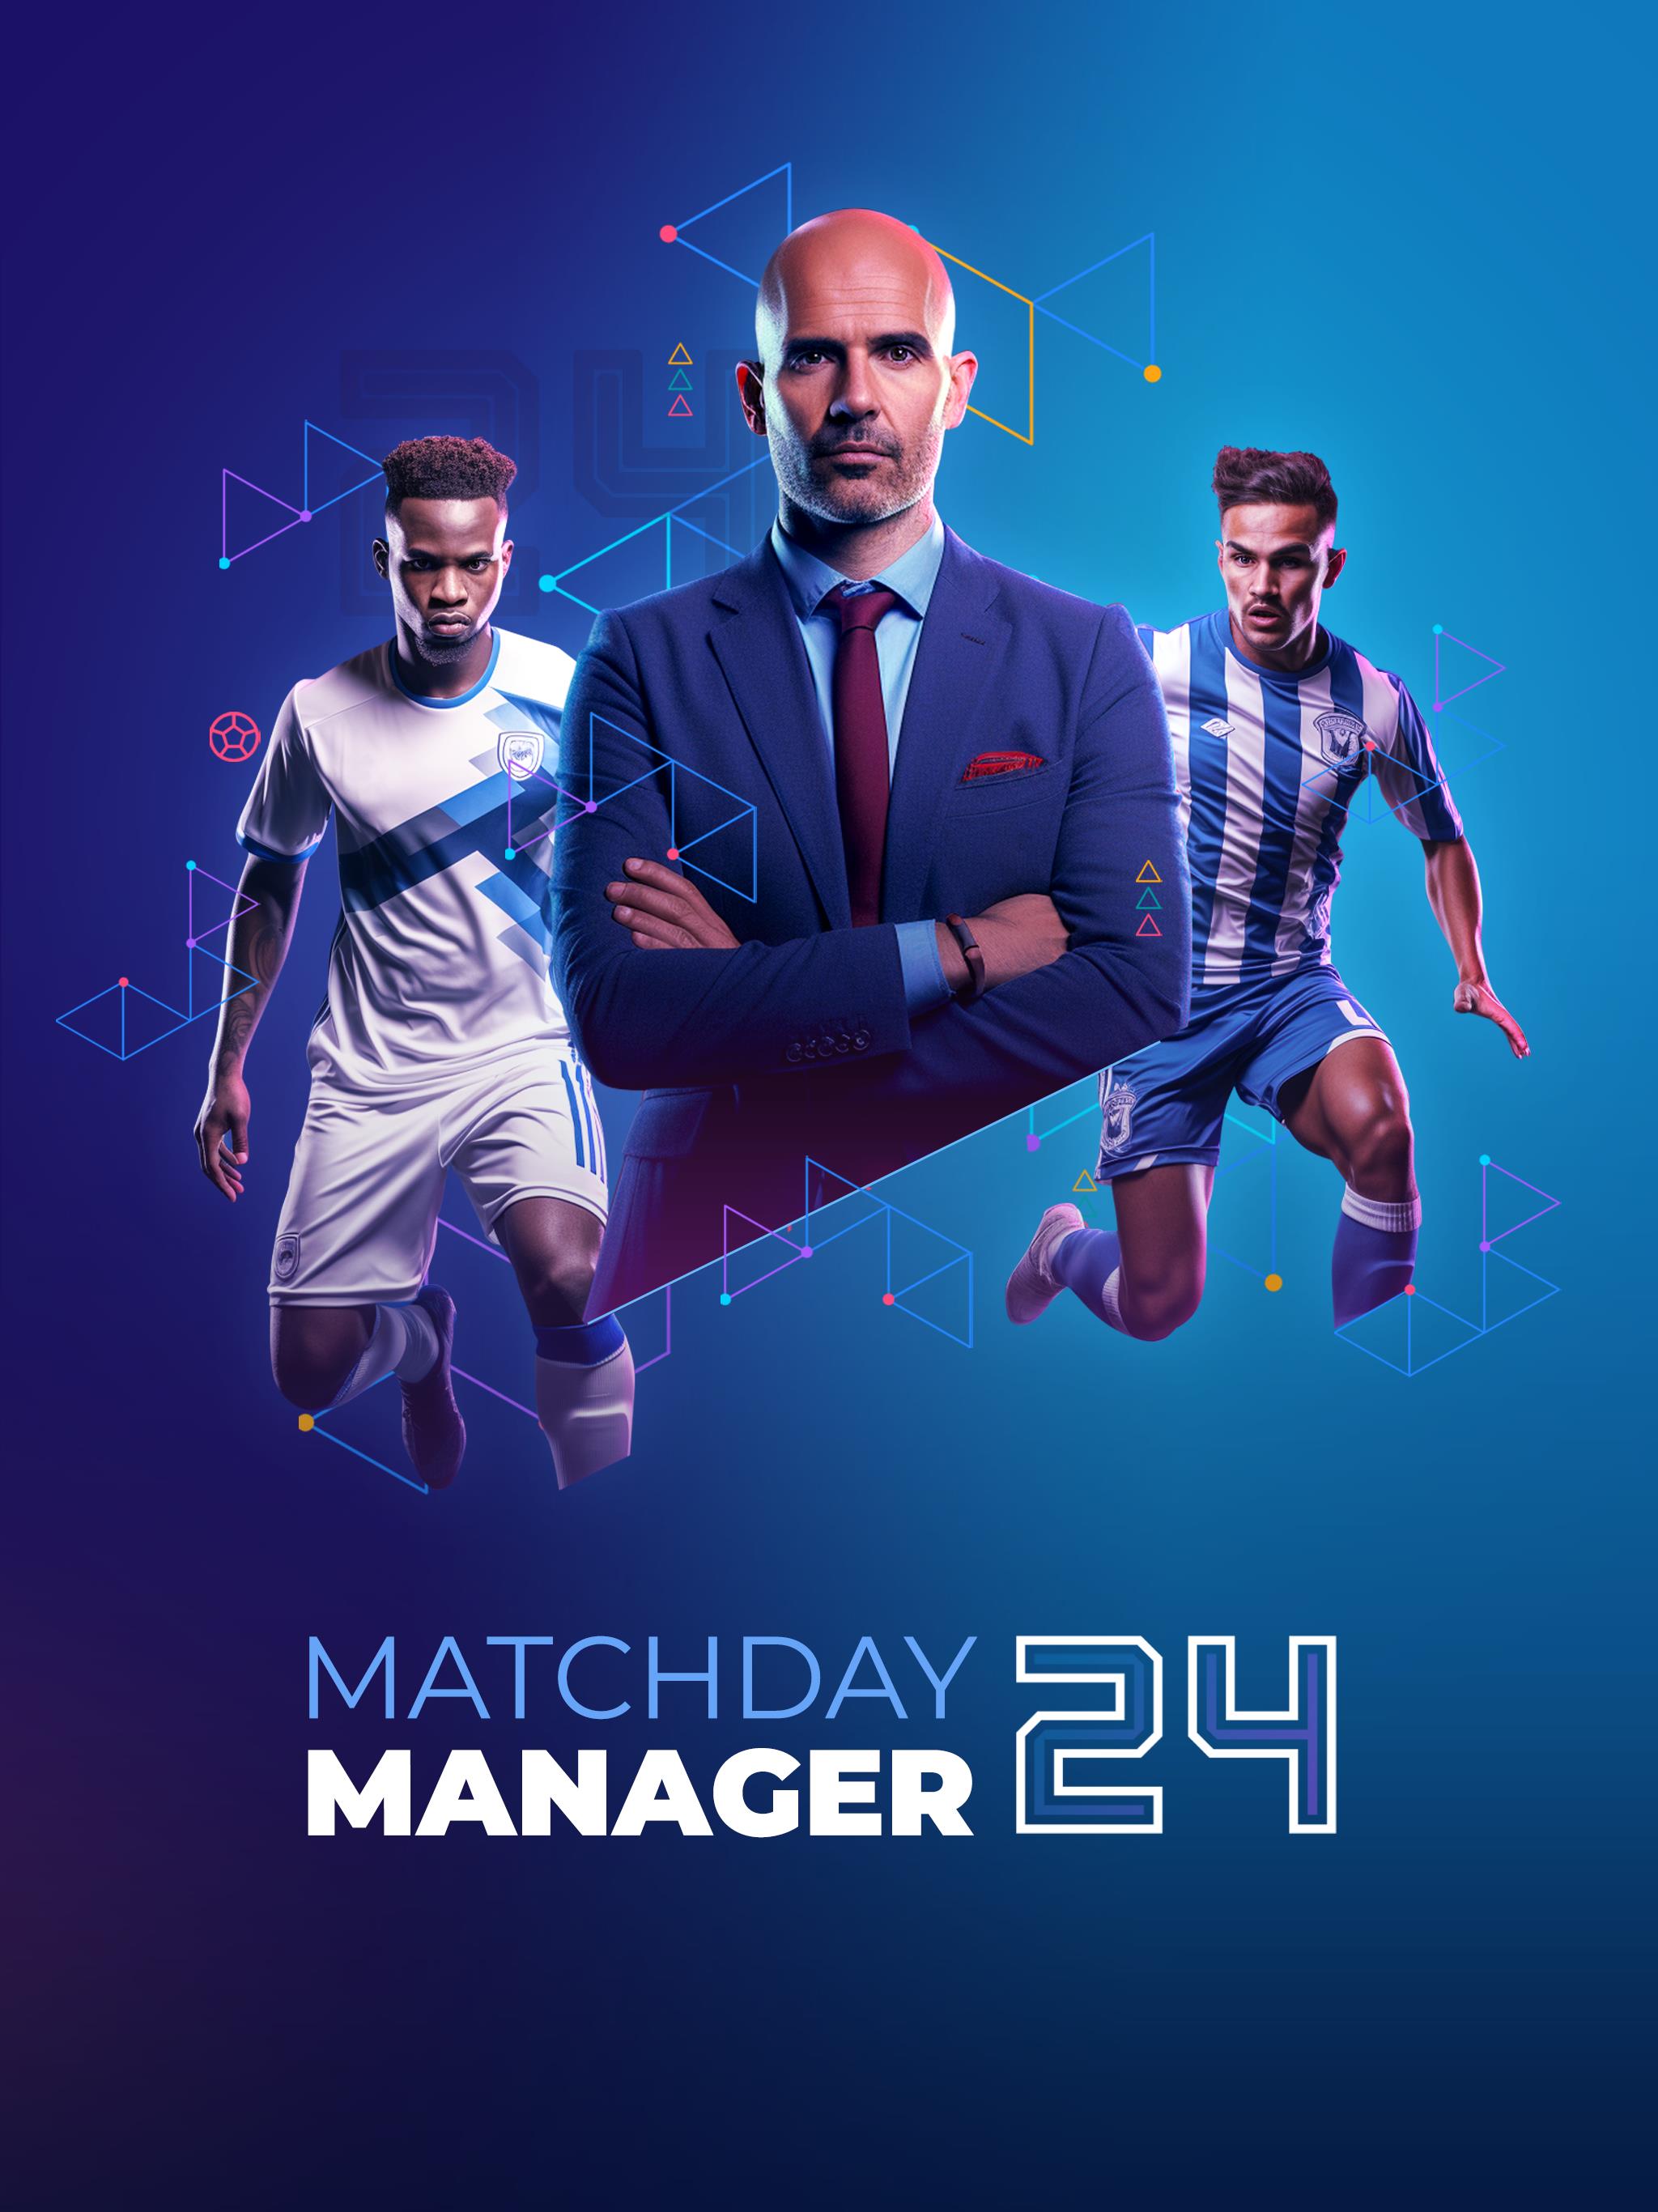 Soccer - Matchday Manager 24 Screenshot 24